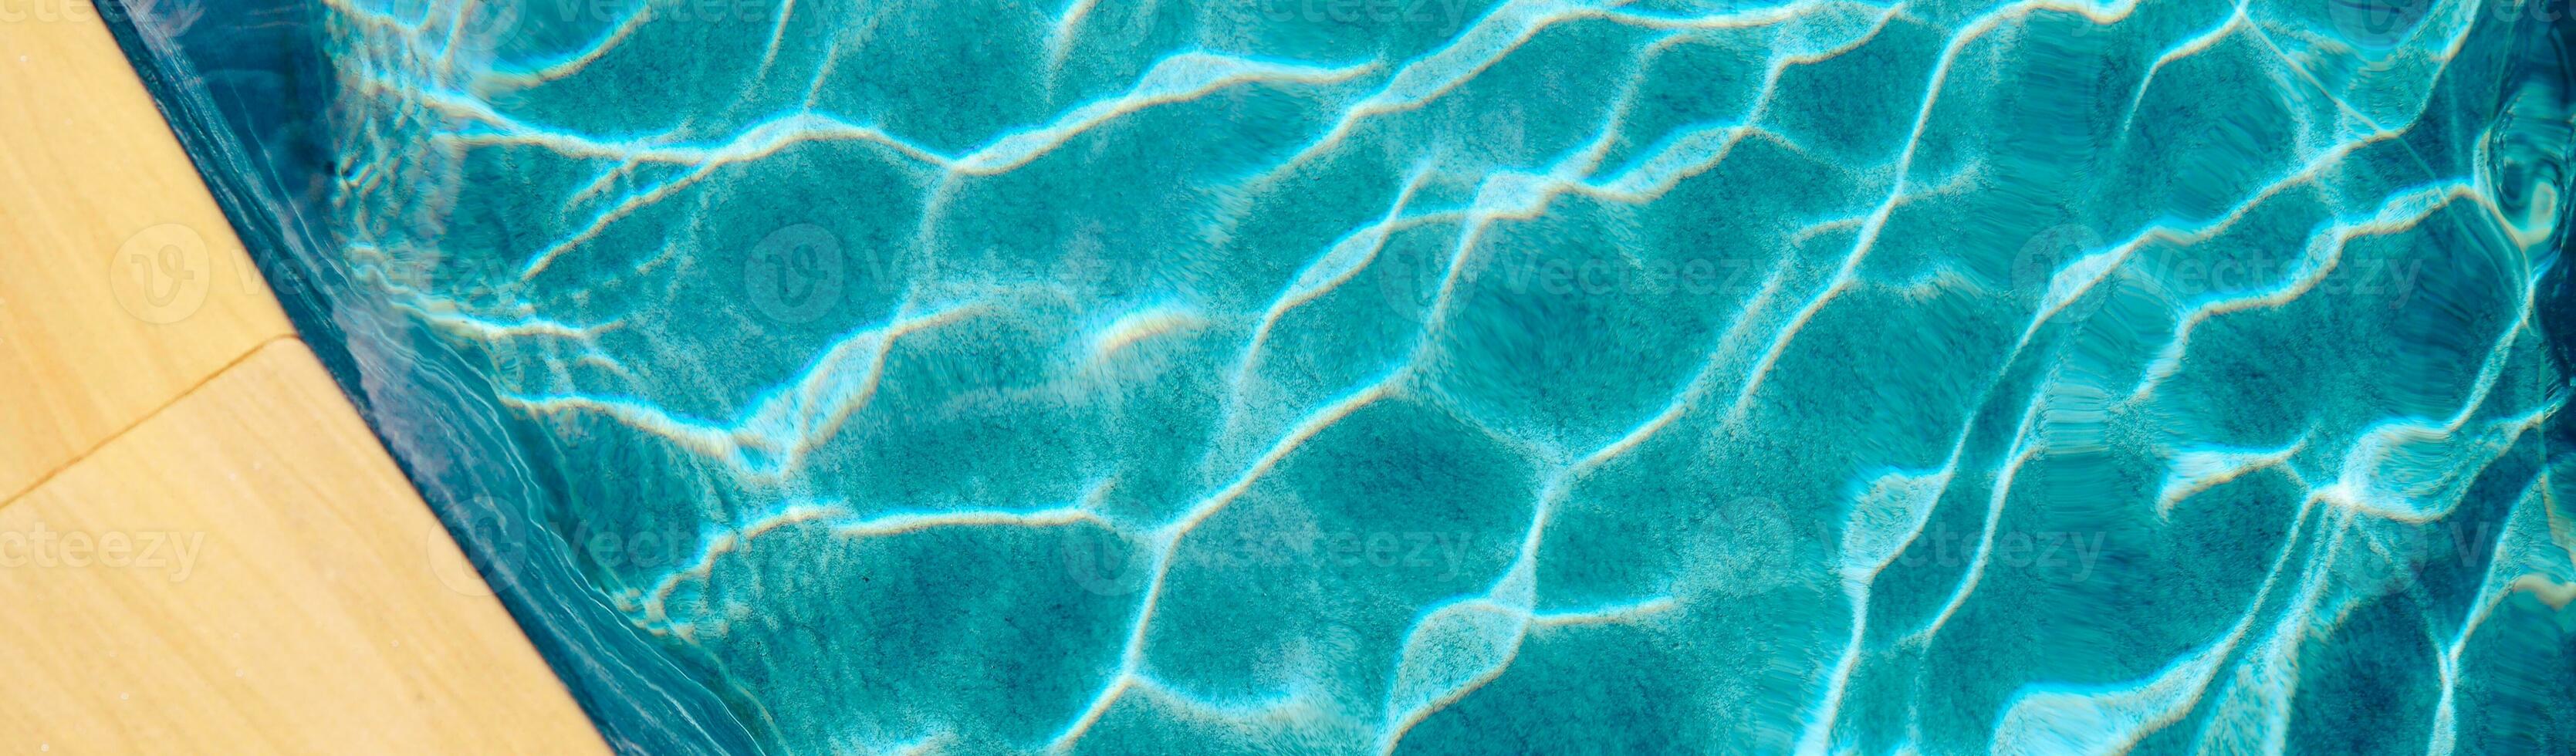 abstrato piscina água. natação piscina inferior cáusticos ondulação e fluxo com ondas fundo superfície do azul natação piscina foto